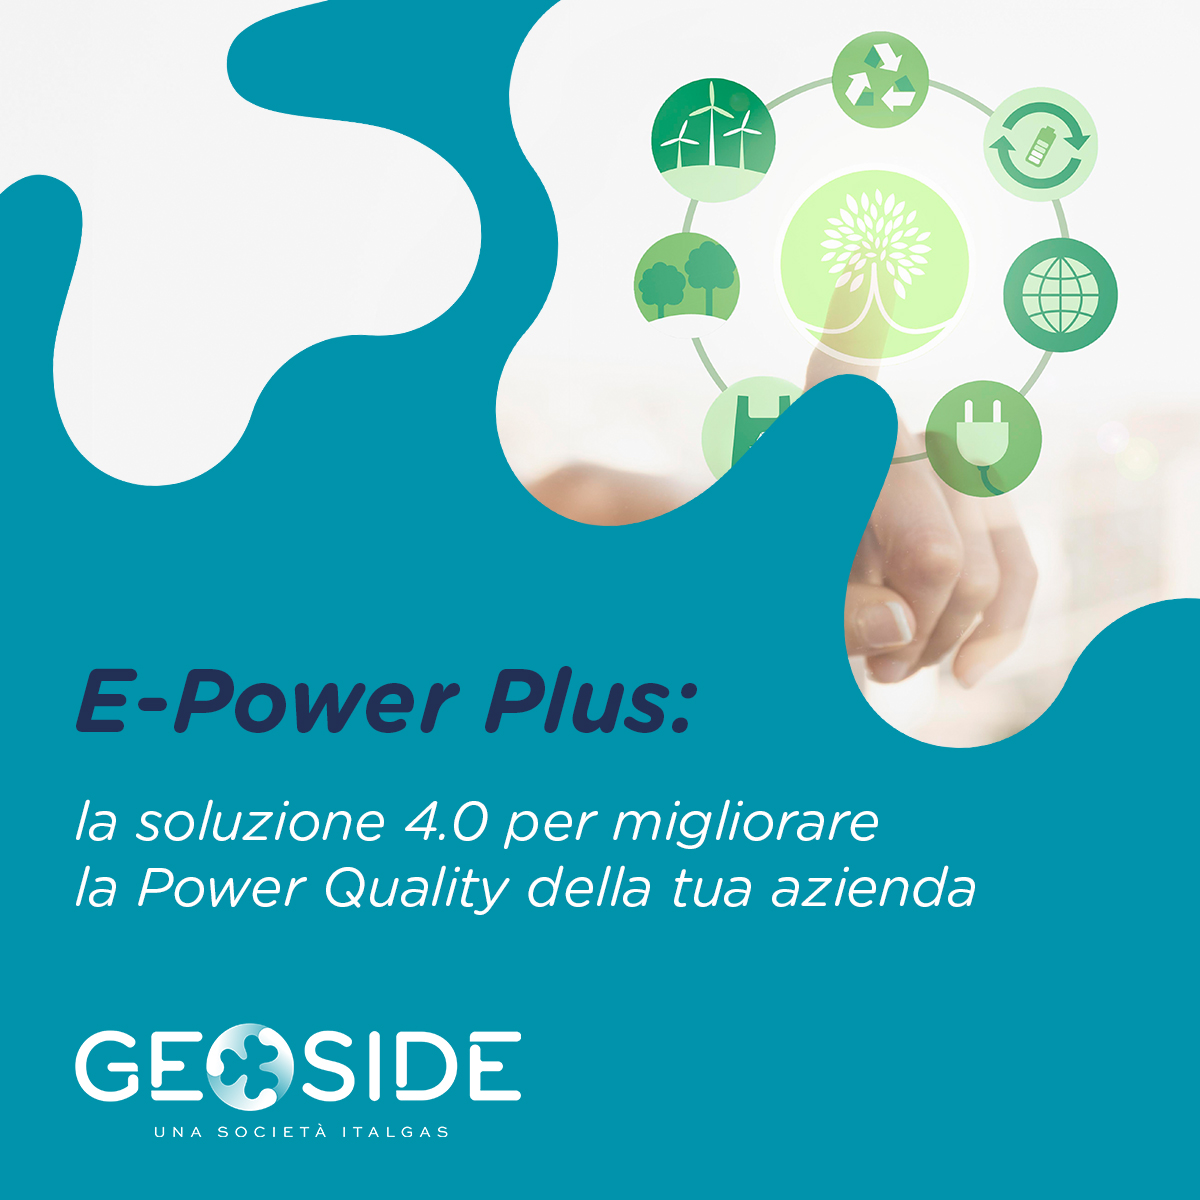 💡Risparmia e migliora la qualità dell'energia della tua azienda con E-Power Plus di Geoside: minimizza le perdite, ottimizza i consumi e riduce le emissioni 📊 Scopri di più: bit.ly/Geoside_EPower… #Geoside #EfficenzaEnergetica #Sostenibilità